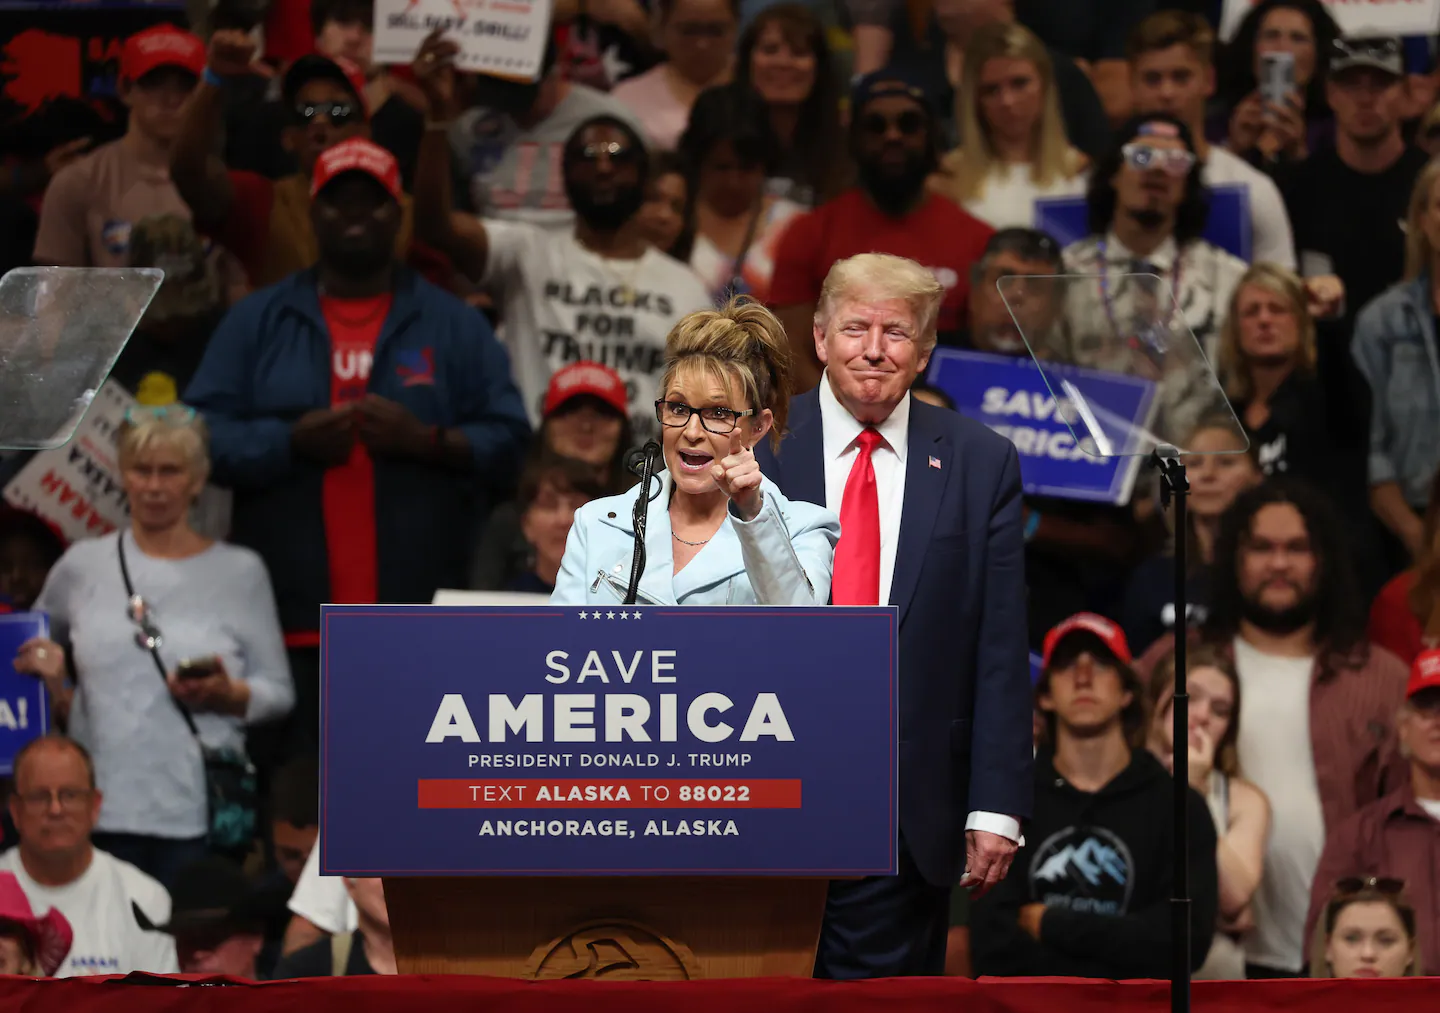 El voto de Alaska pone a prueba la influencia de Trump, la apuesta de Palin por un nuevo sistema electoral